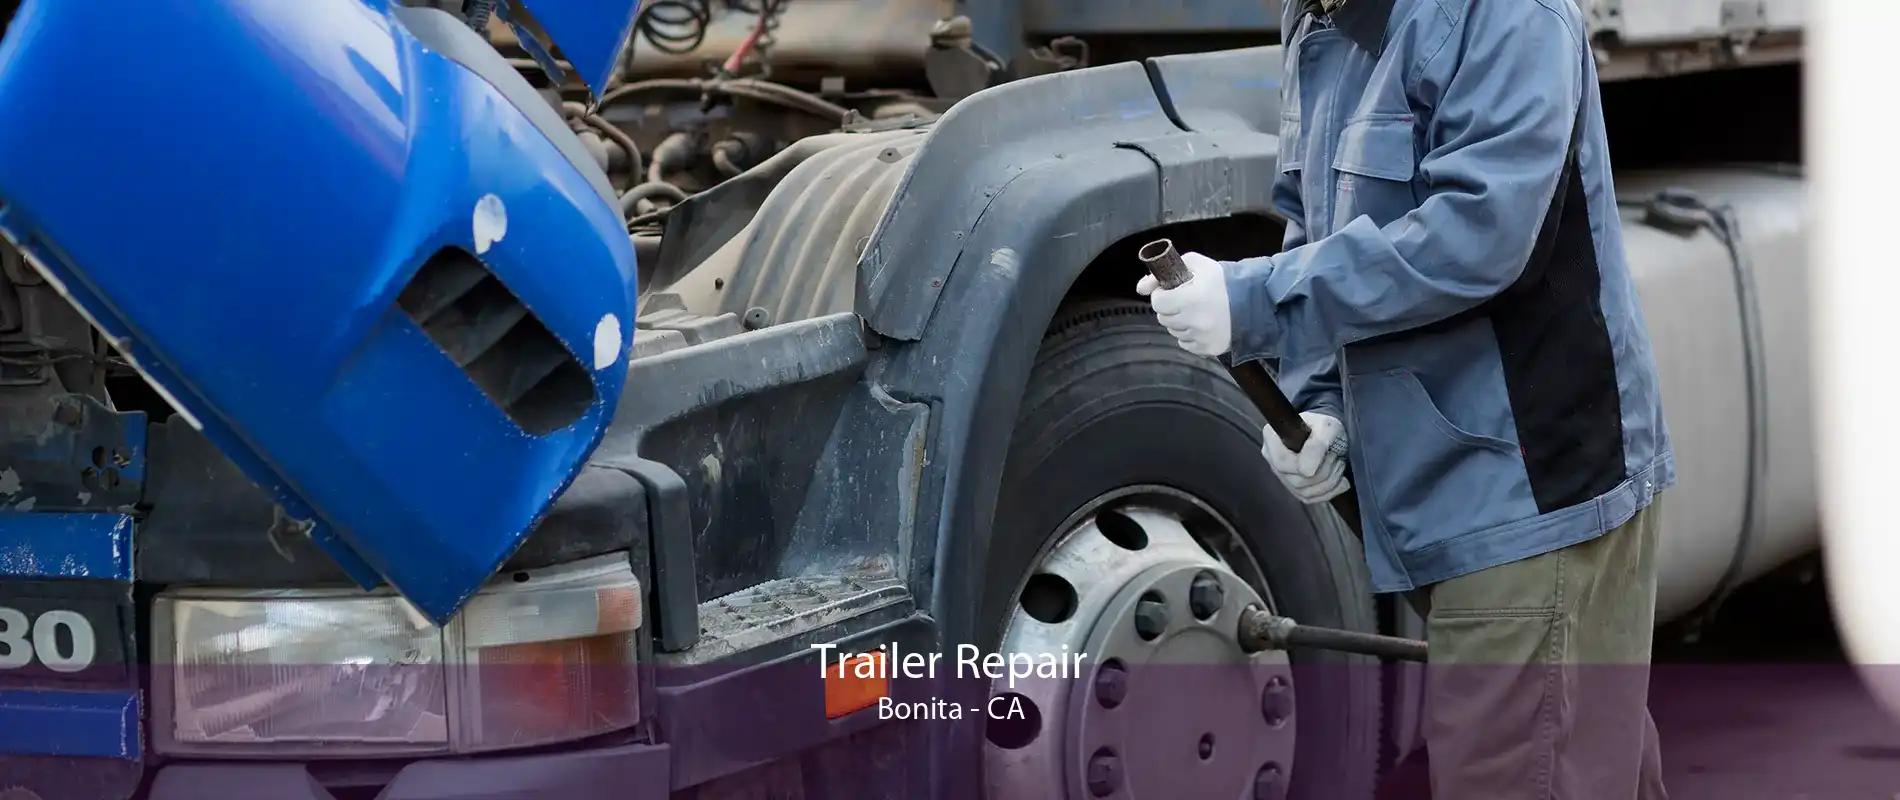 Trailer Repair Bonita - CA